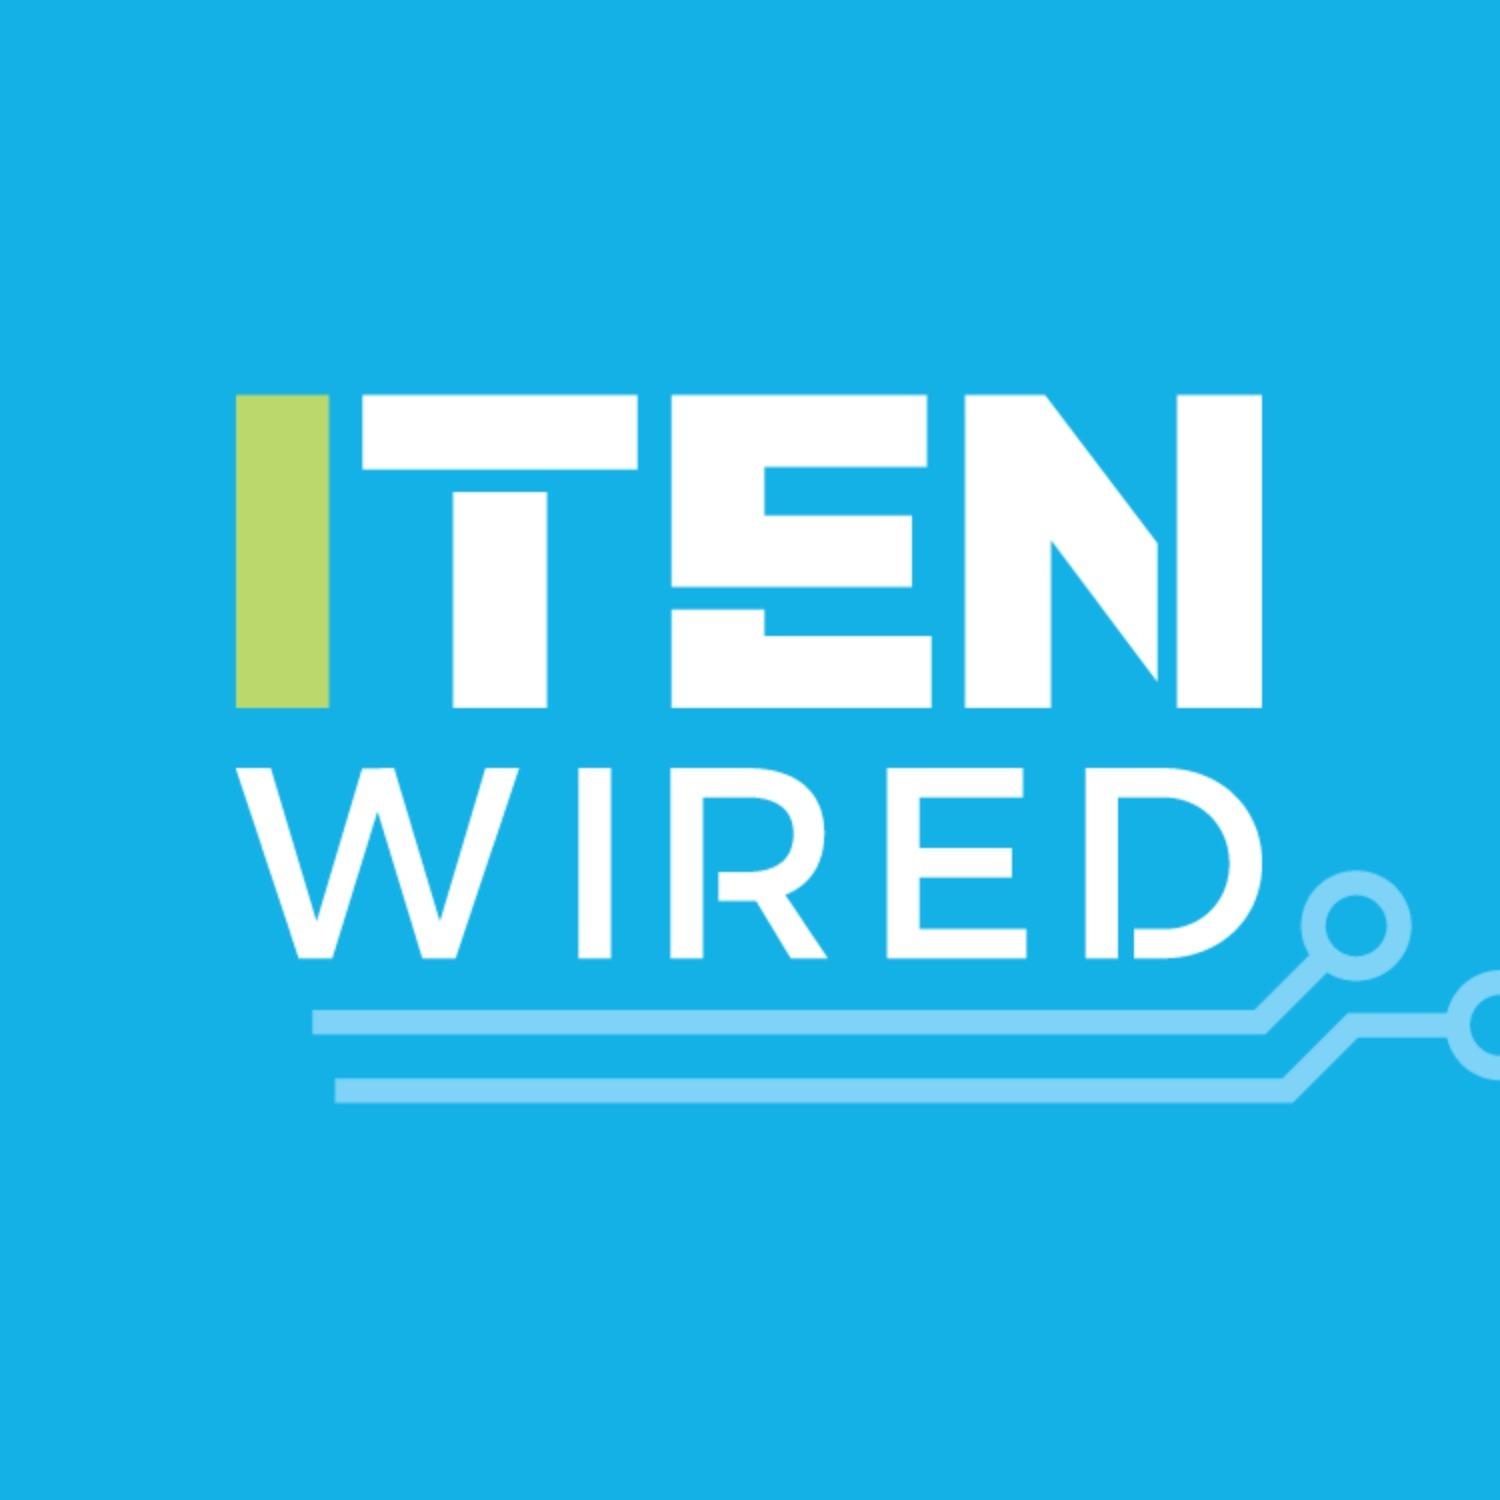 ITEN Wired Radio: 2017 Kickoff Announcement